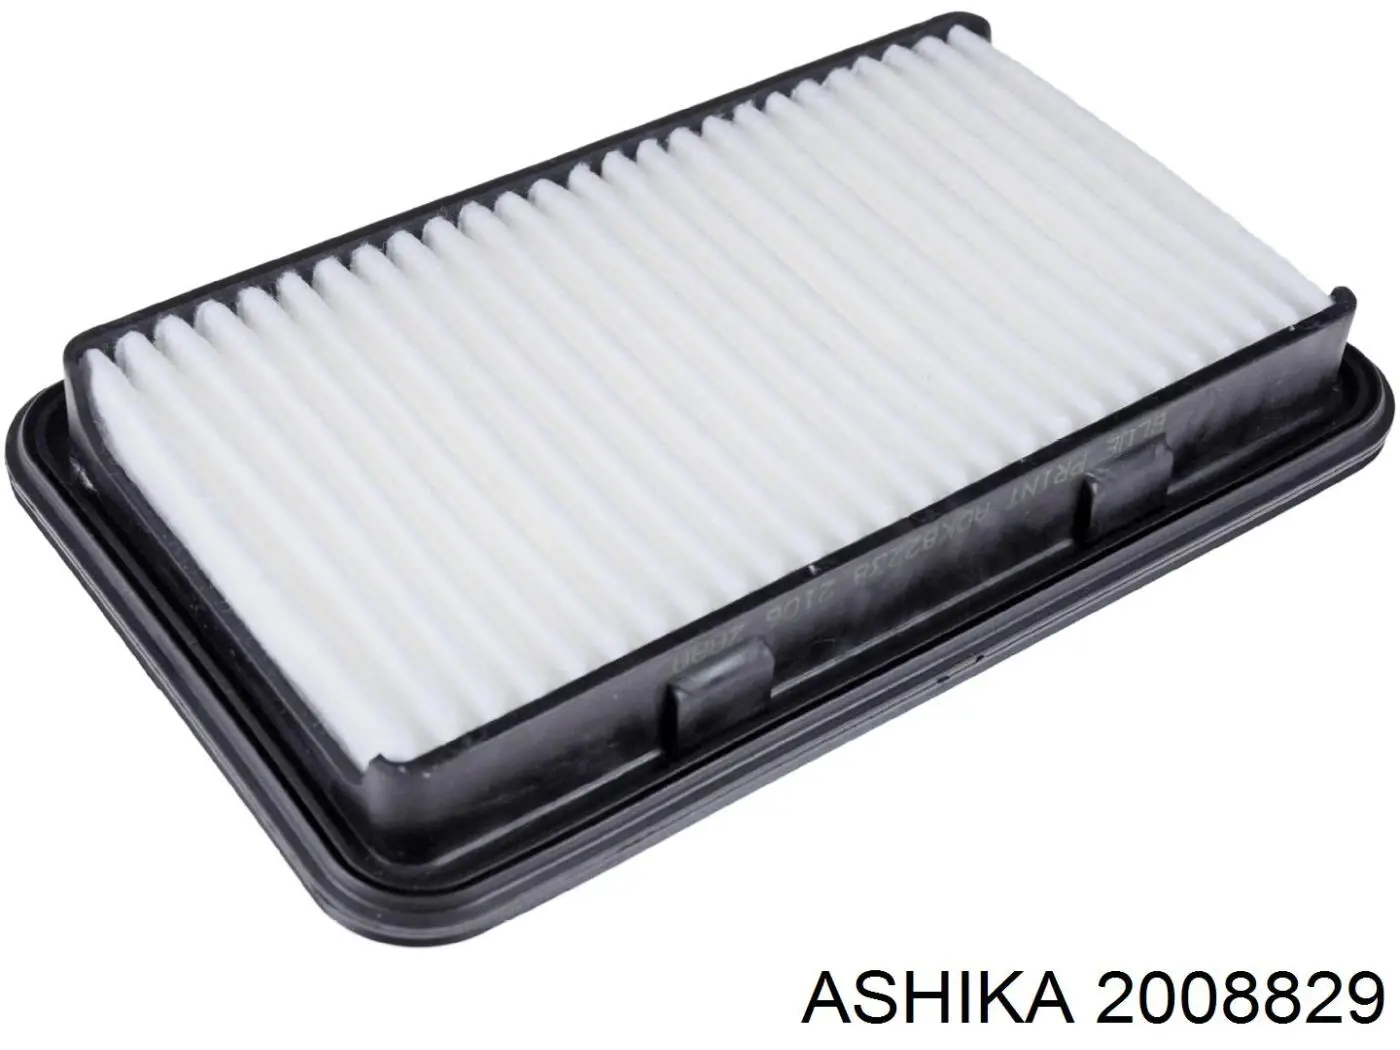 2008829 Ashika фільтр повітряний